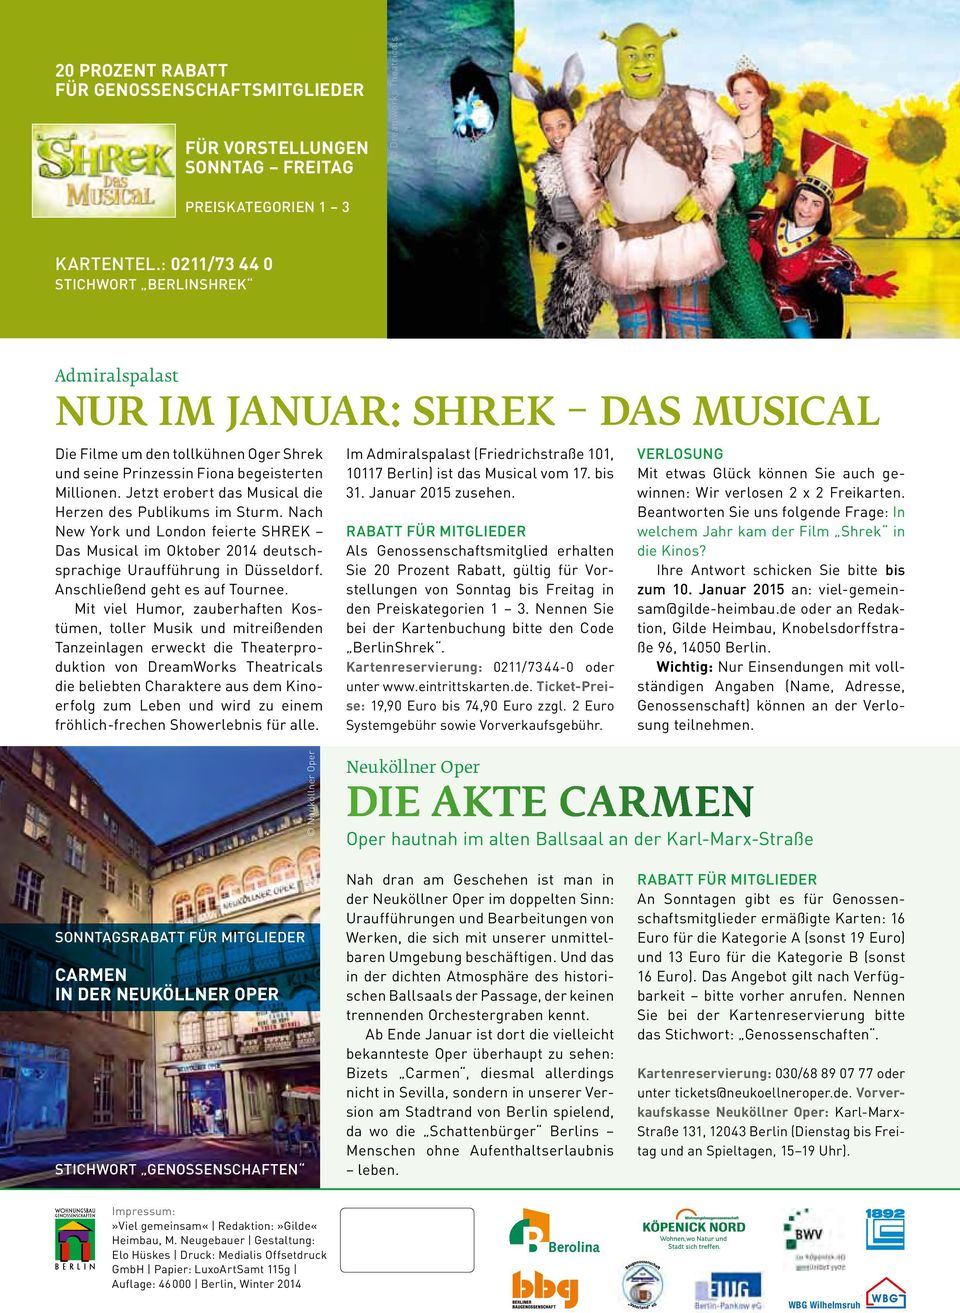 Jetzt erobert das Musical die Herzen des Publikums im Sturm. Nach New York und London feierte SHREK Das Musical im Oktober 2014 deutschsprachige Uraufführung in Düsseldorf.